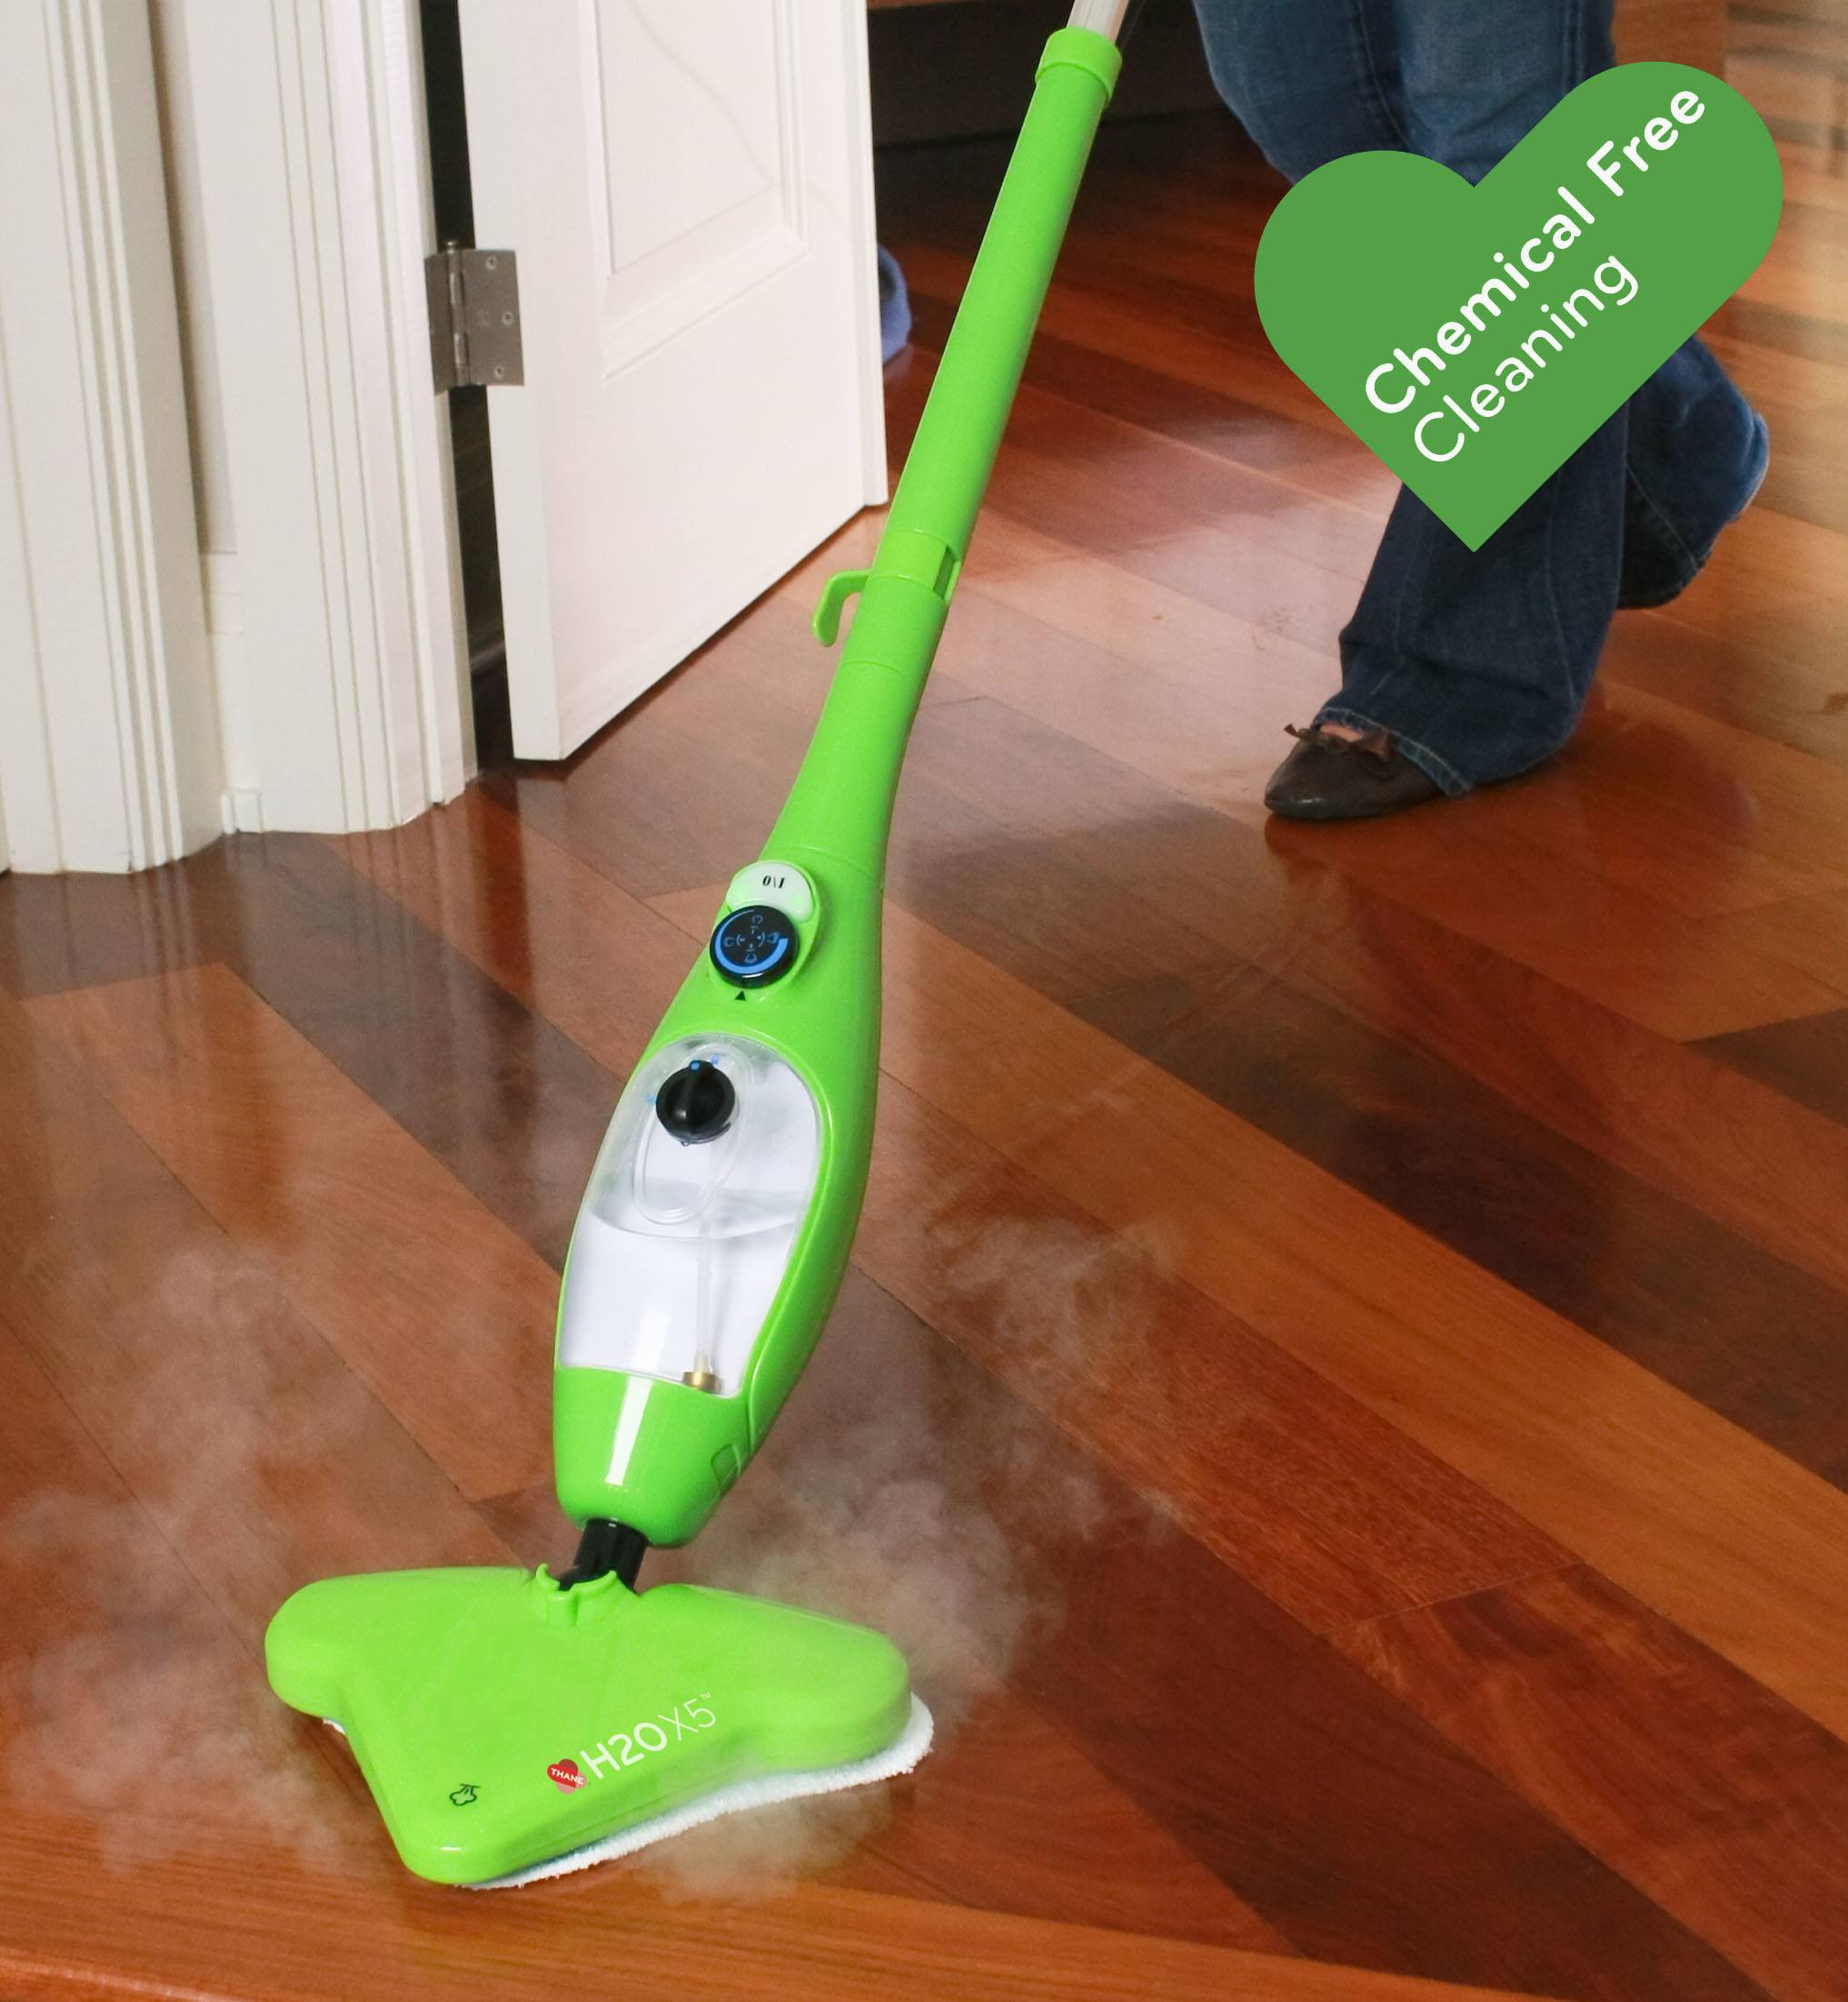 x5 steam mop